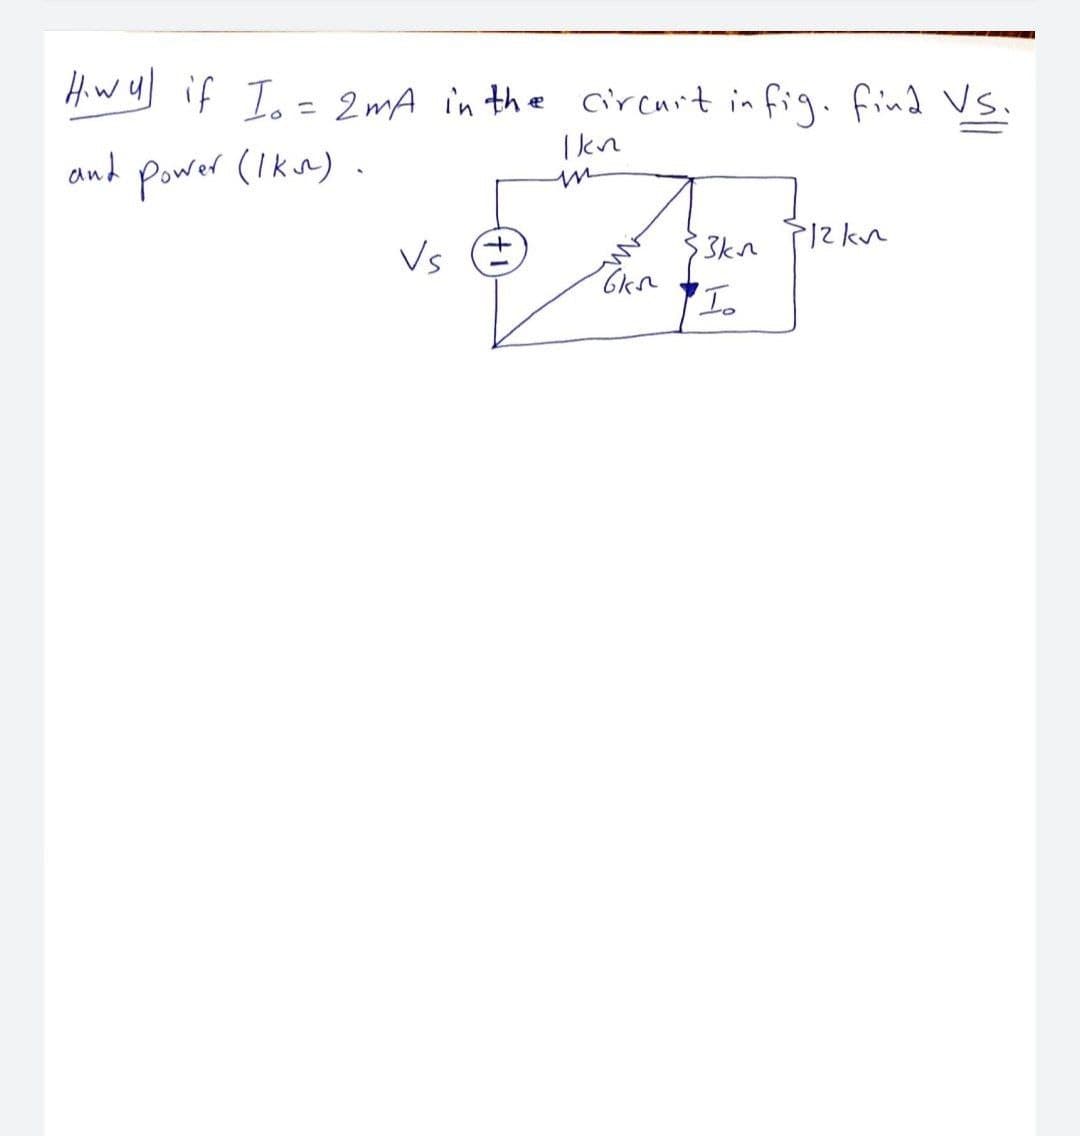 Hw y) if T.- 2mA in the circuit in fig.find Vs.
ニ
and Power (Ikn)
in
Vs E
3kn 2kn
'Io
